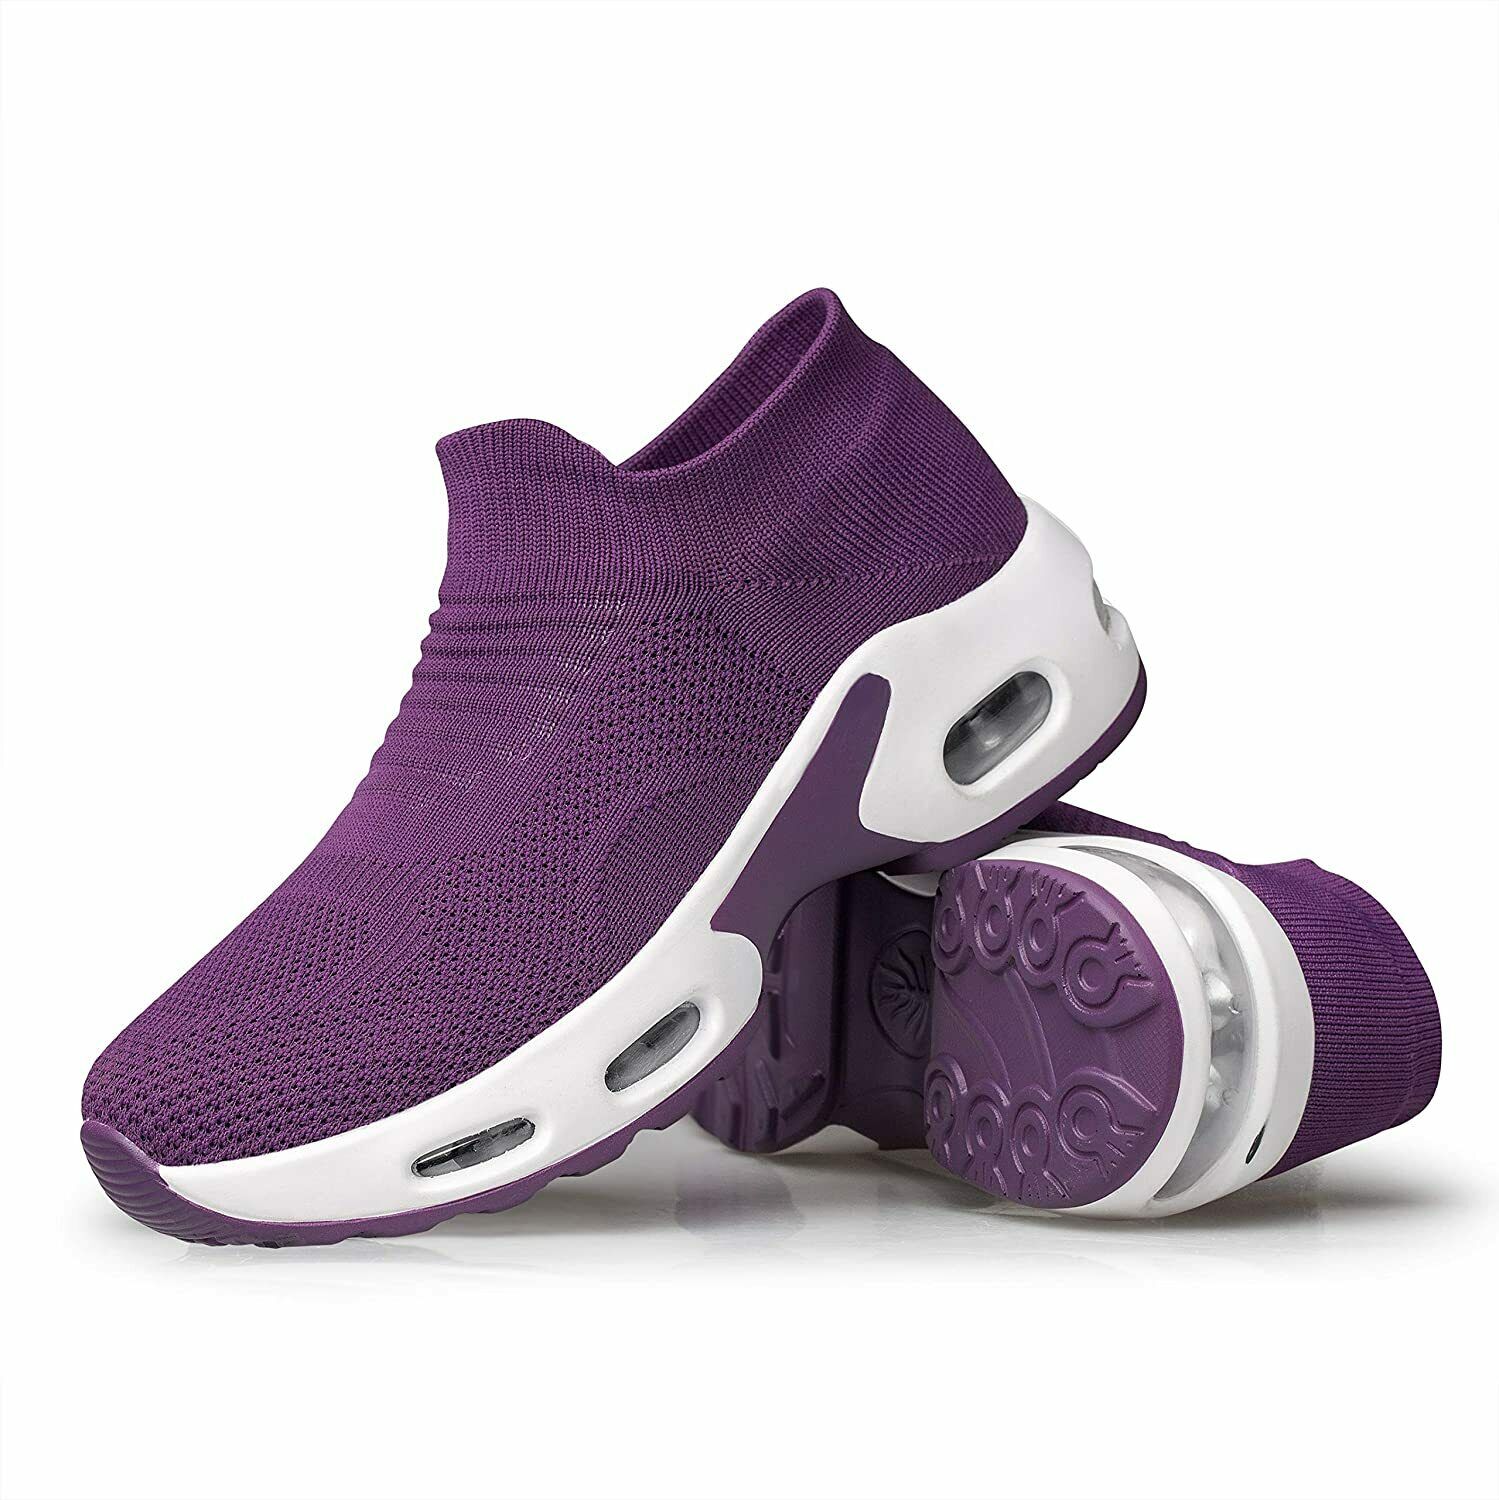 YHOON Women's Walking Shoes Slip-on - Sock Sneakers, Dark Purple, Size 10.0 HoTW